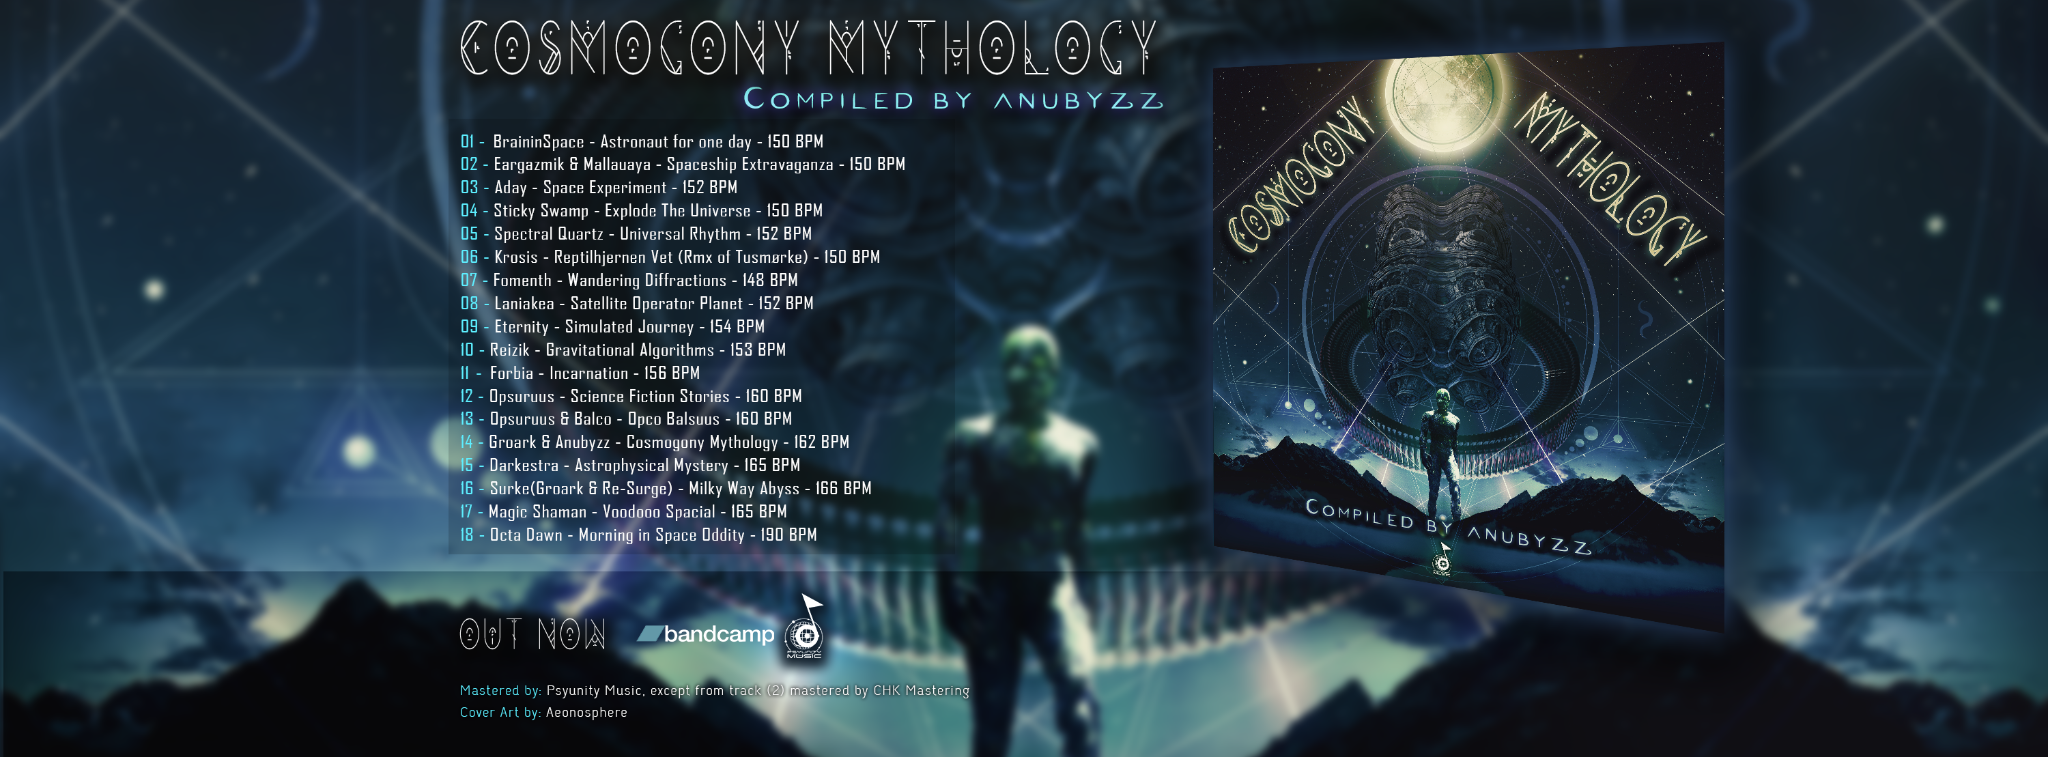 Cosmogony Mythology cd